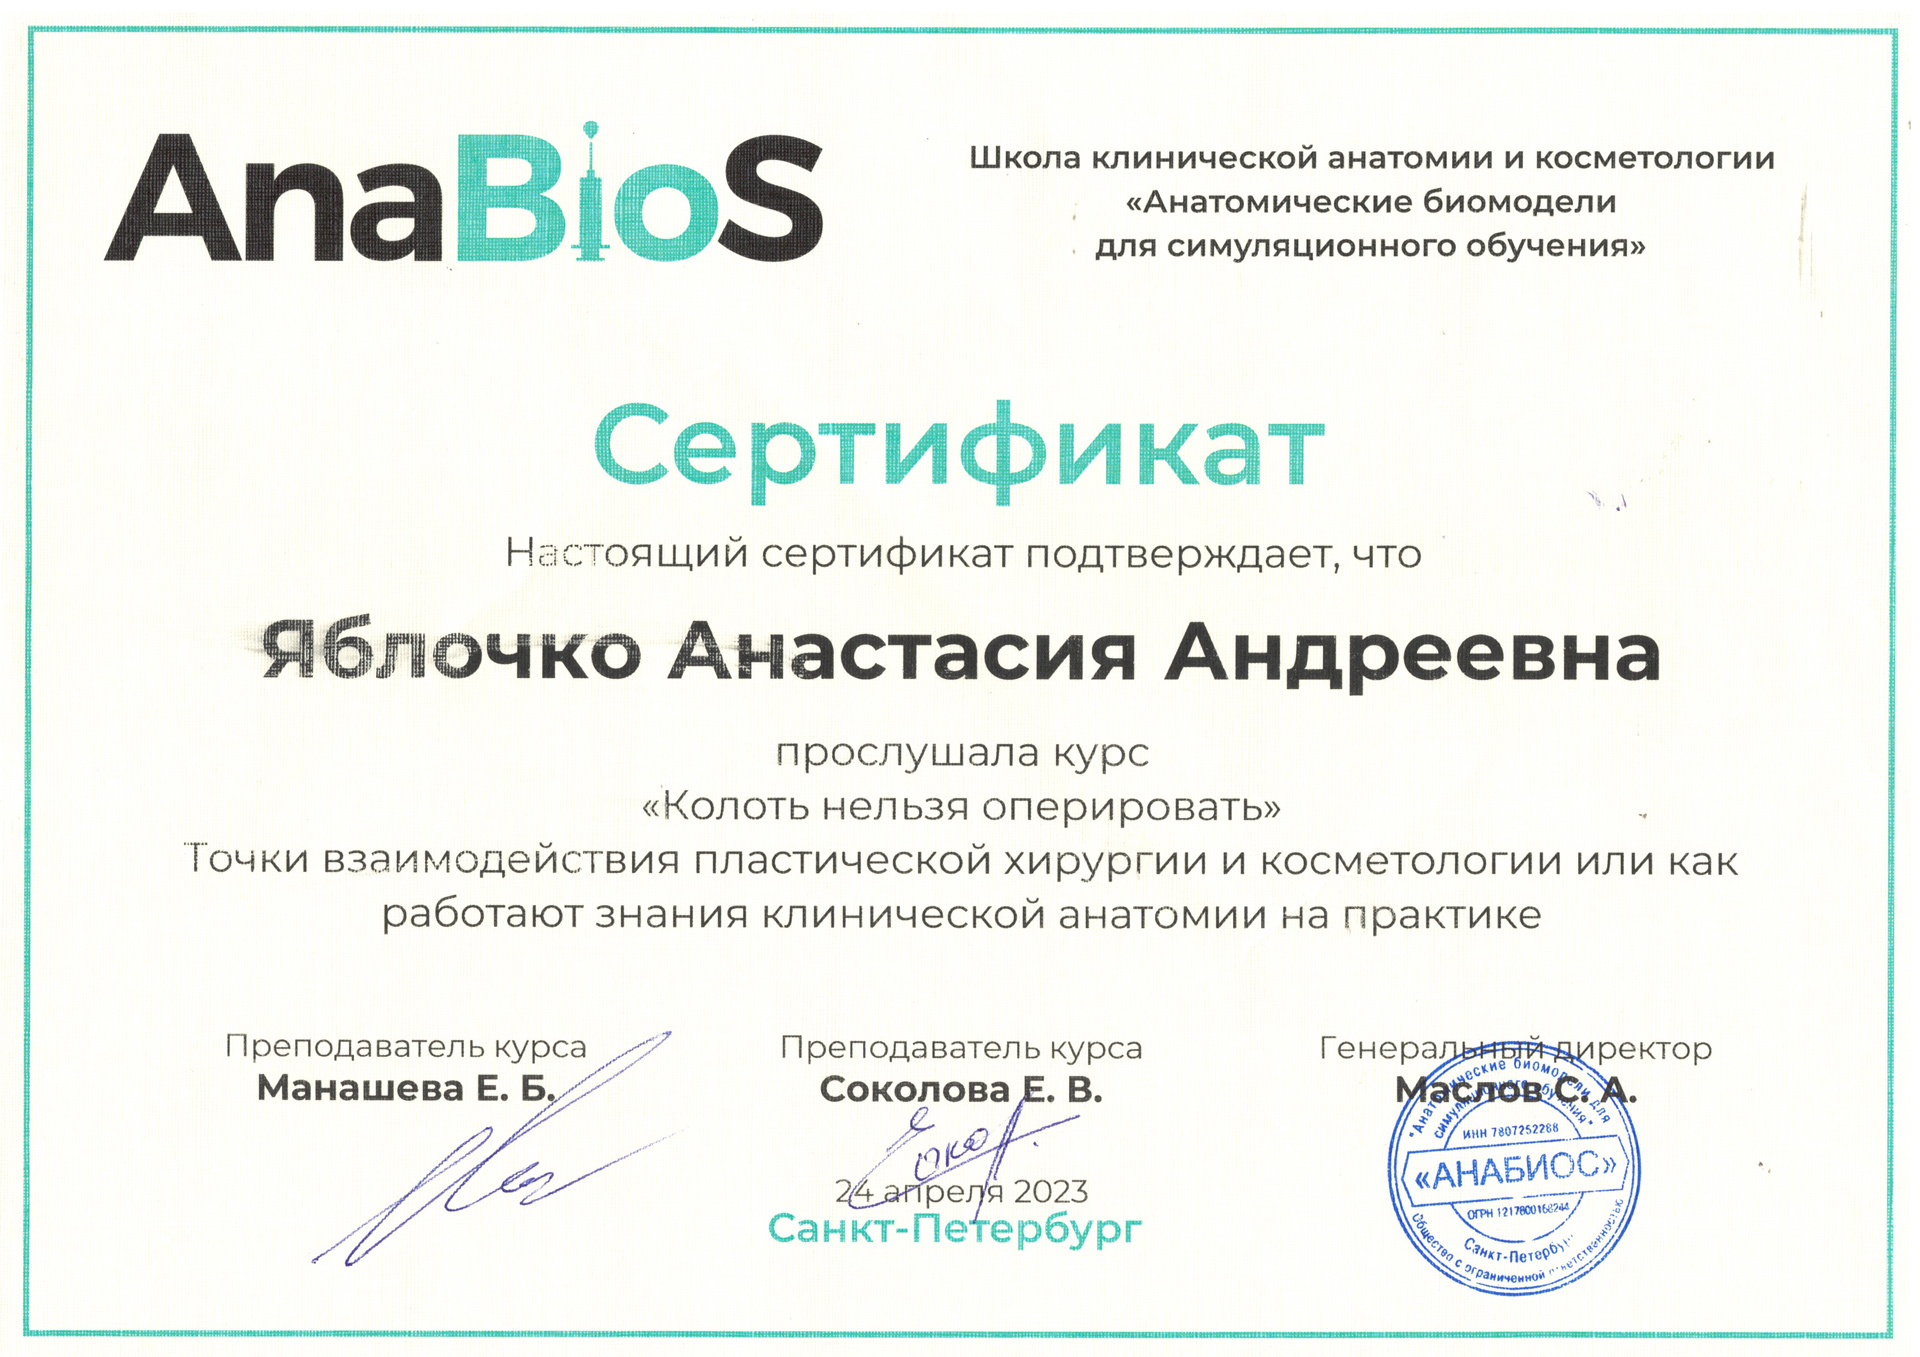 Сертификат — Курс «Колоть нельзя оперировать». Яблочко Анастасия Андреевна